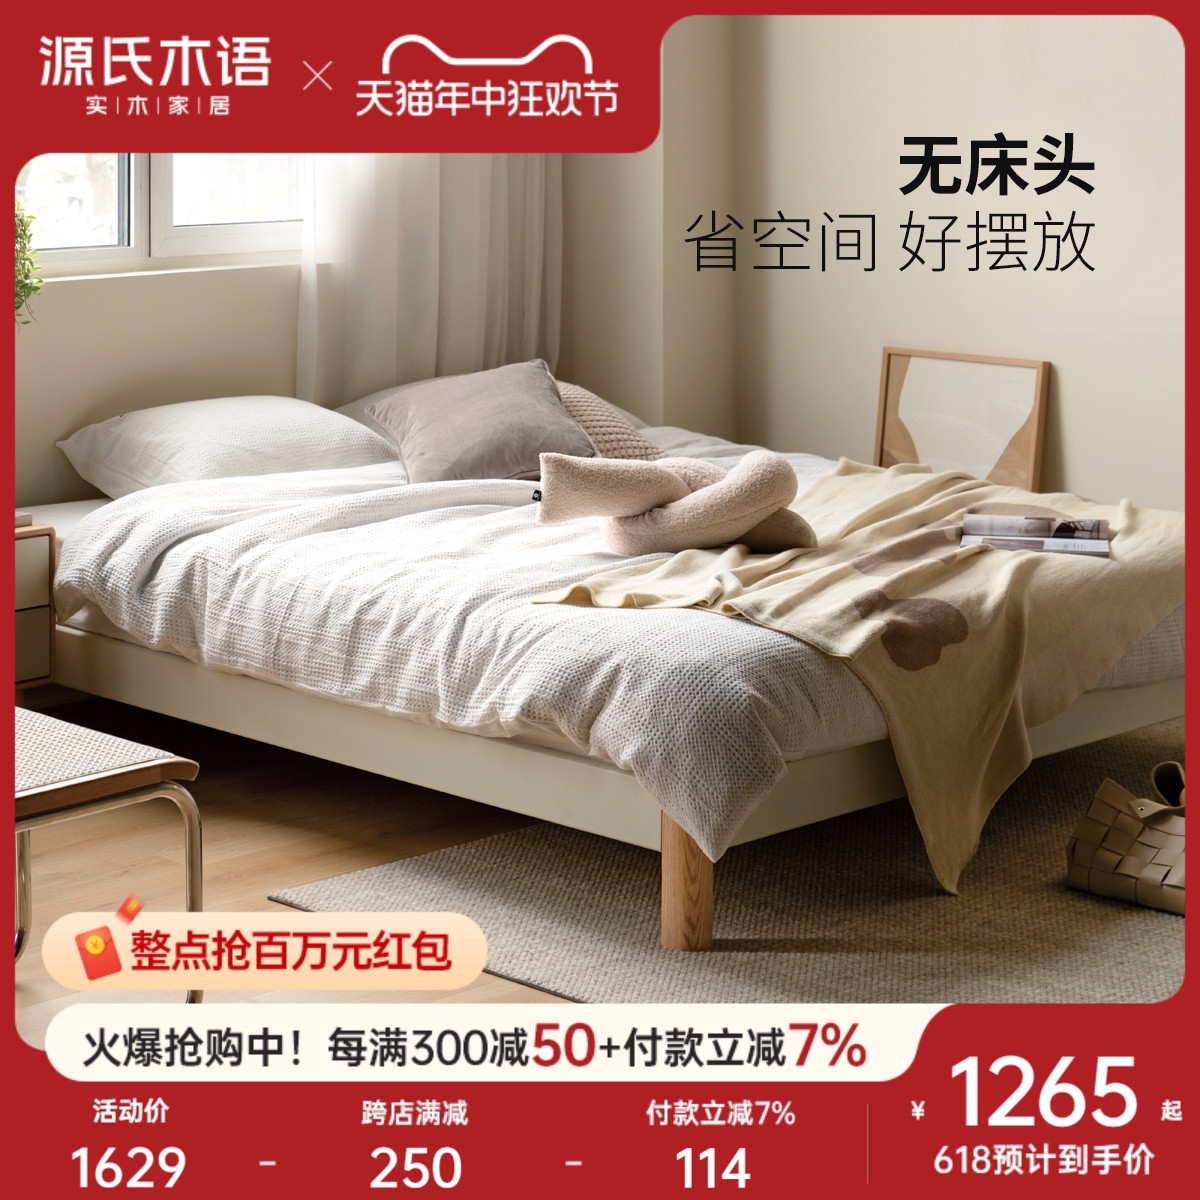 源氏木语实木床现代简约无床头榻榻米床小户型北欧卧室家具白色床